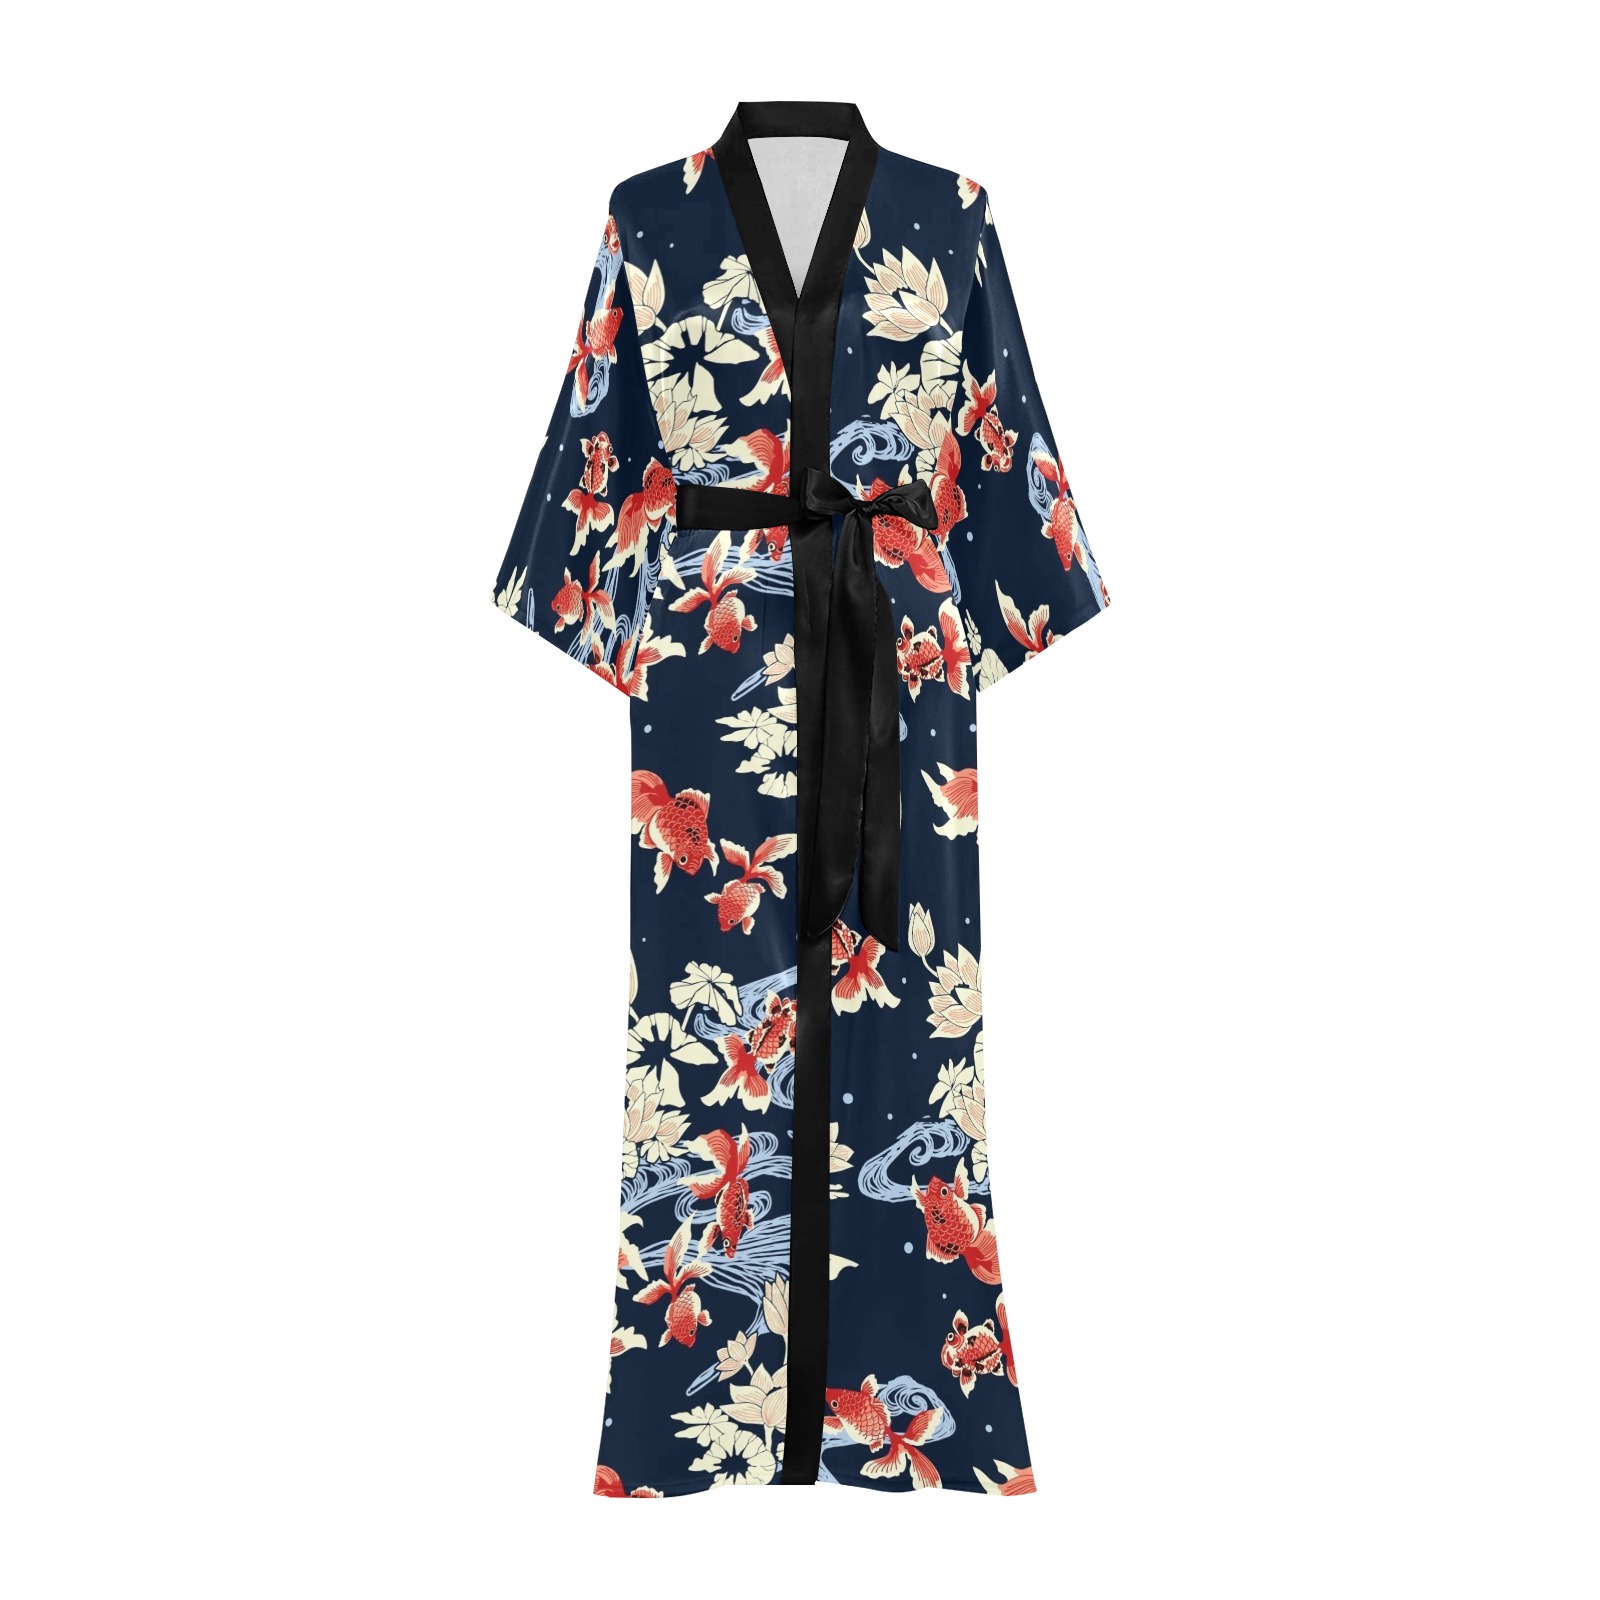 KOI FISH 002 Long Kimono Robe